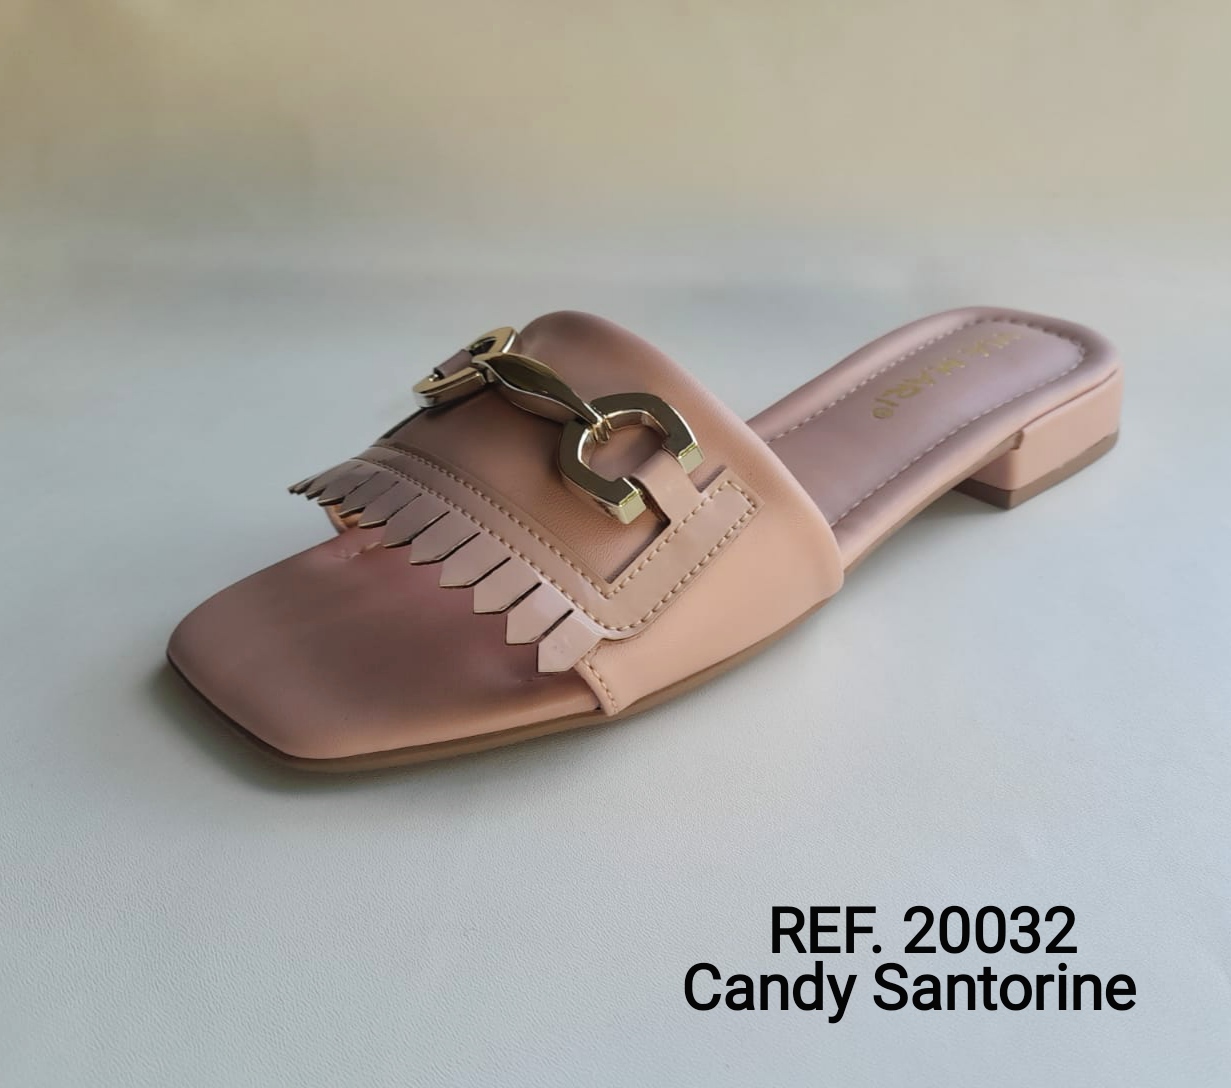 Ref. 20032 - Candy Santorine